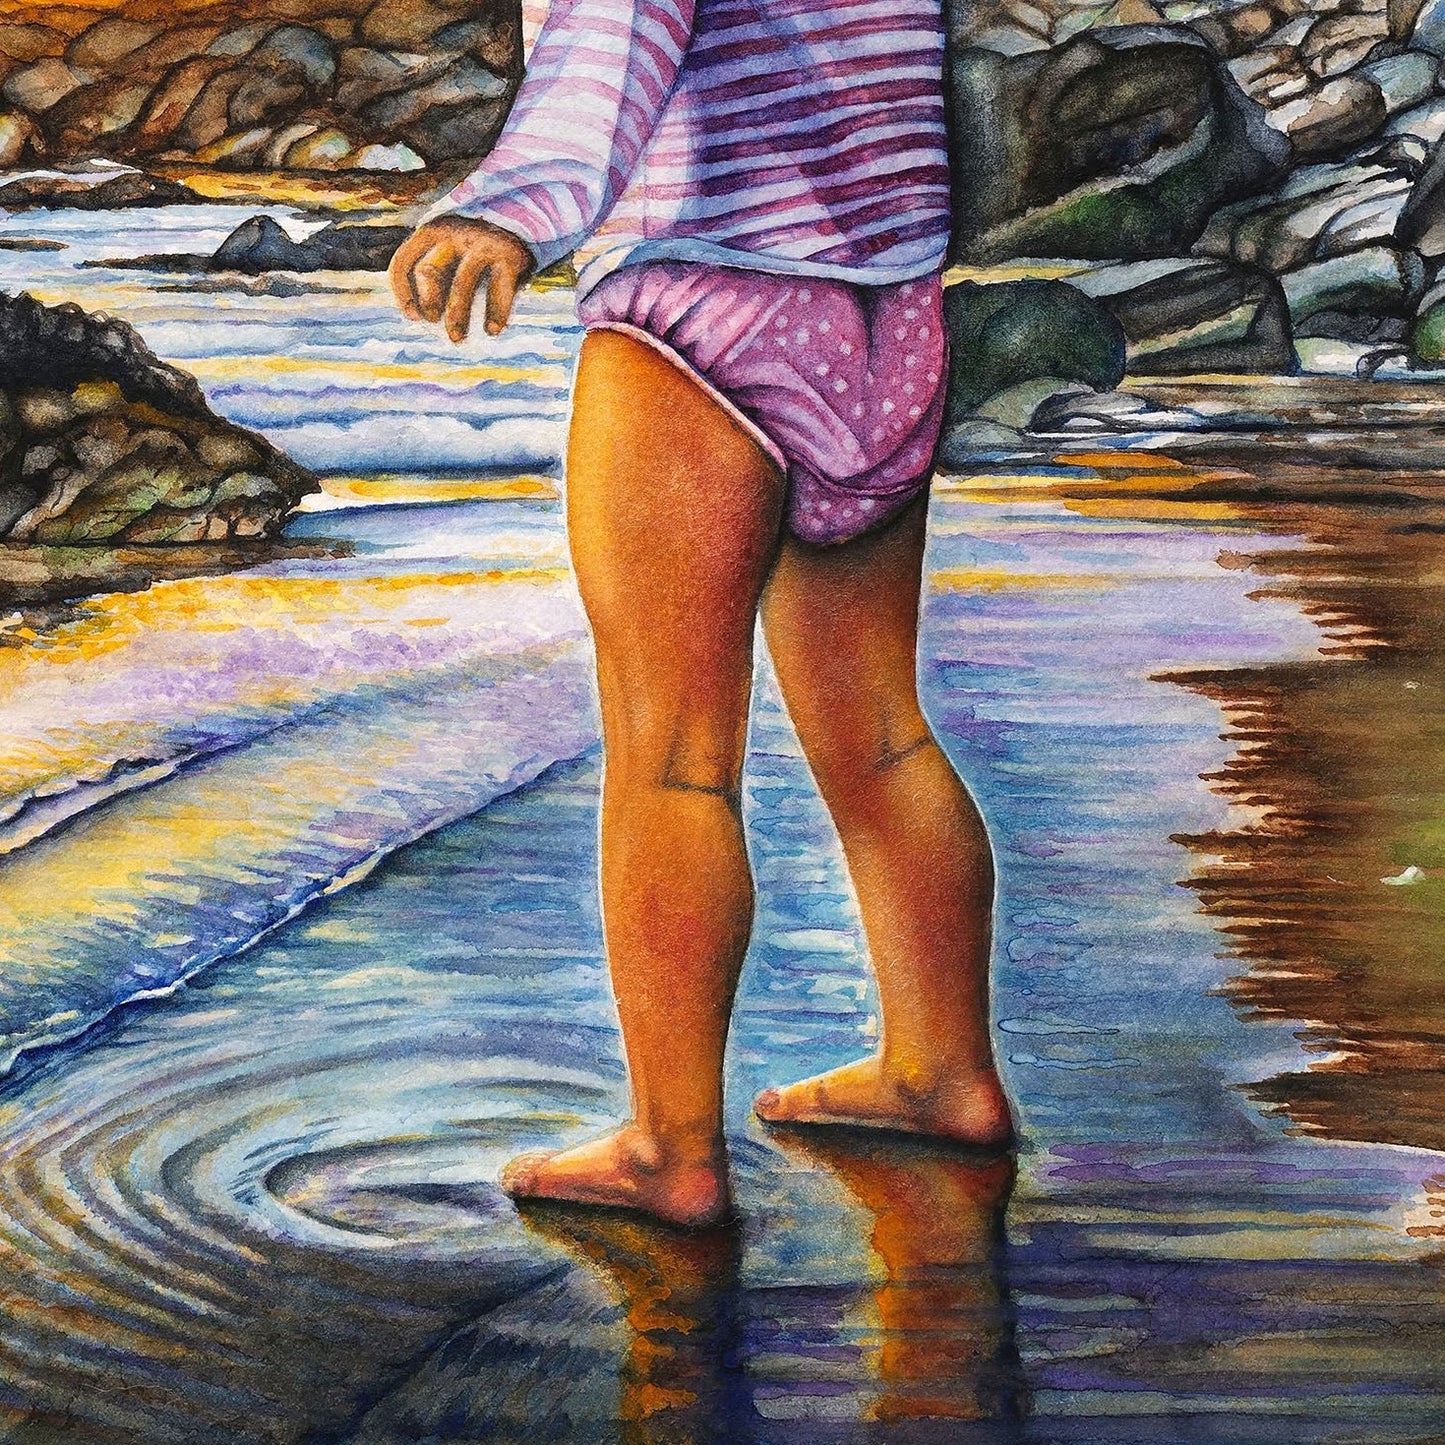 Shore Girl - Giclée Watercolor Print